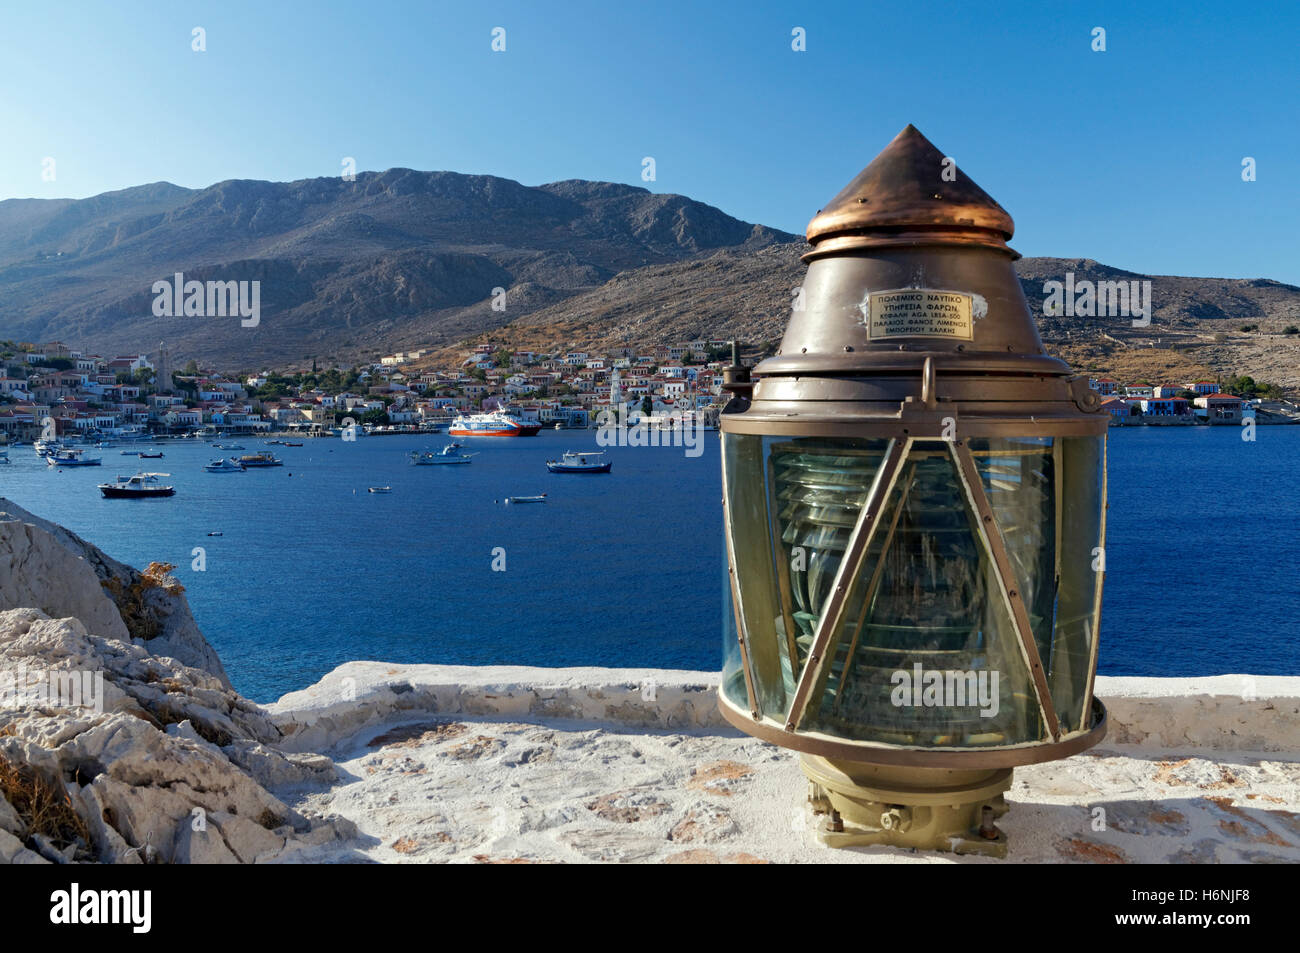 Blick auf Emborio und Hafen, Insel Chalki, Dodekanes, Griechenland. Stockfoto